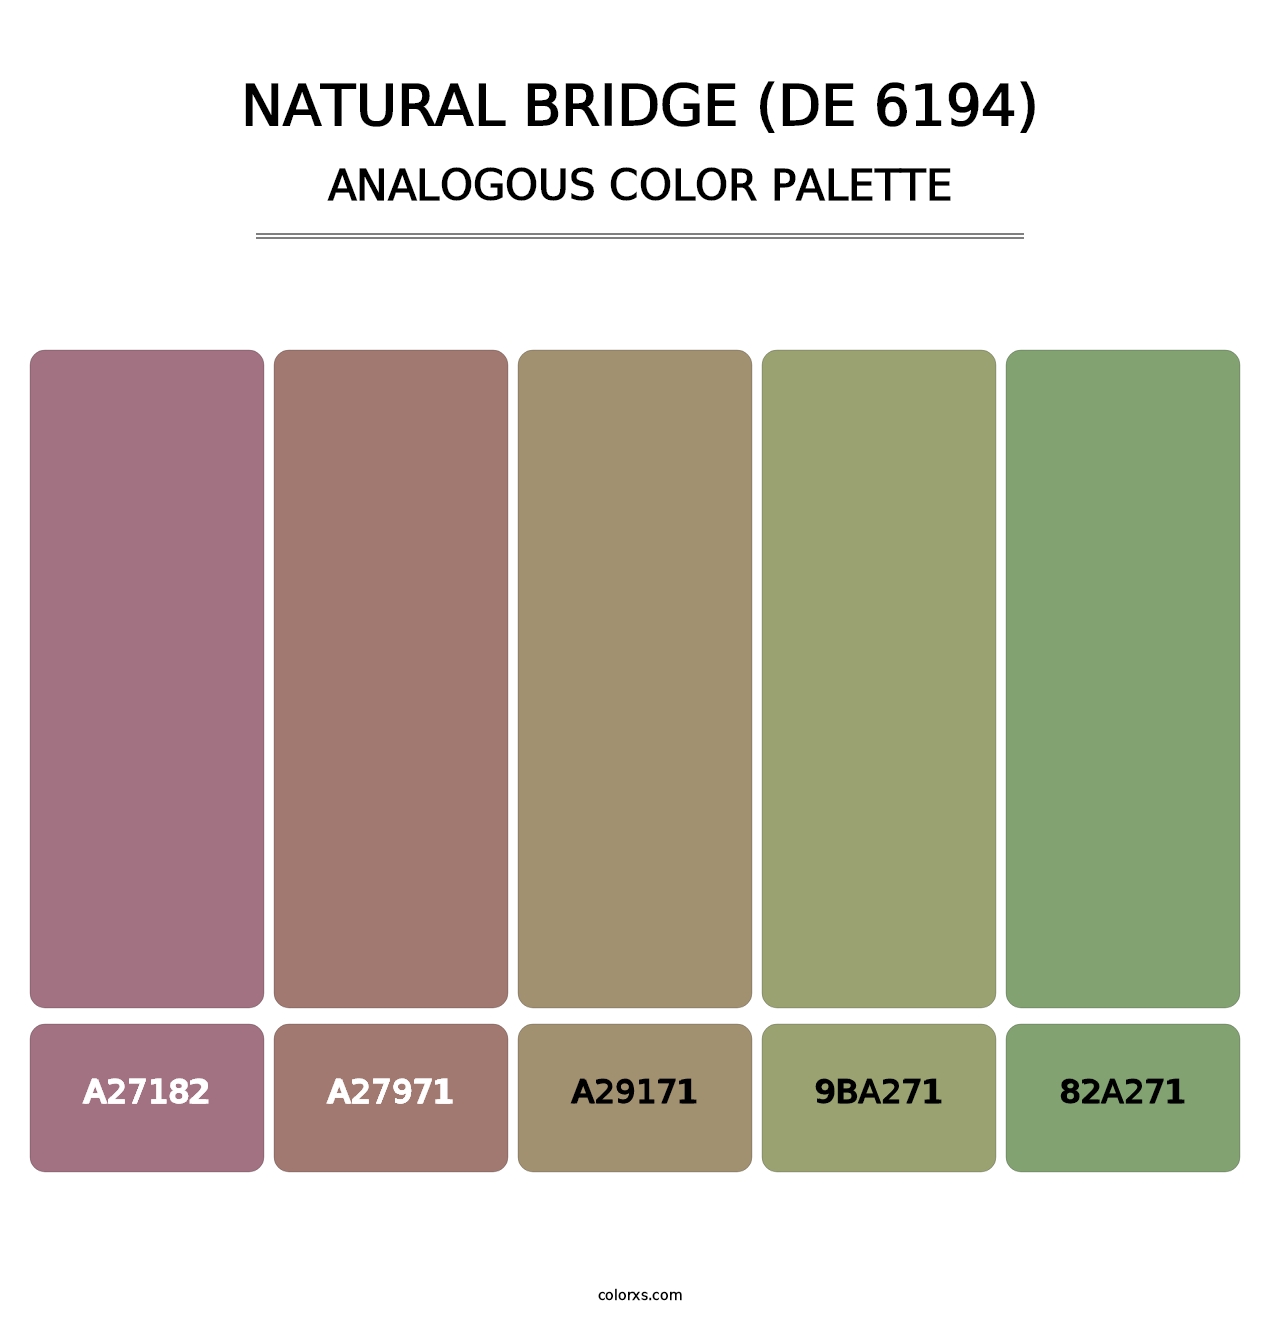 Natural Bridge (DE 6194) - Analogous Color Palette